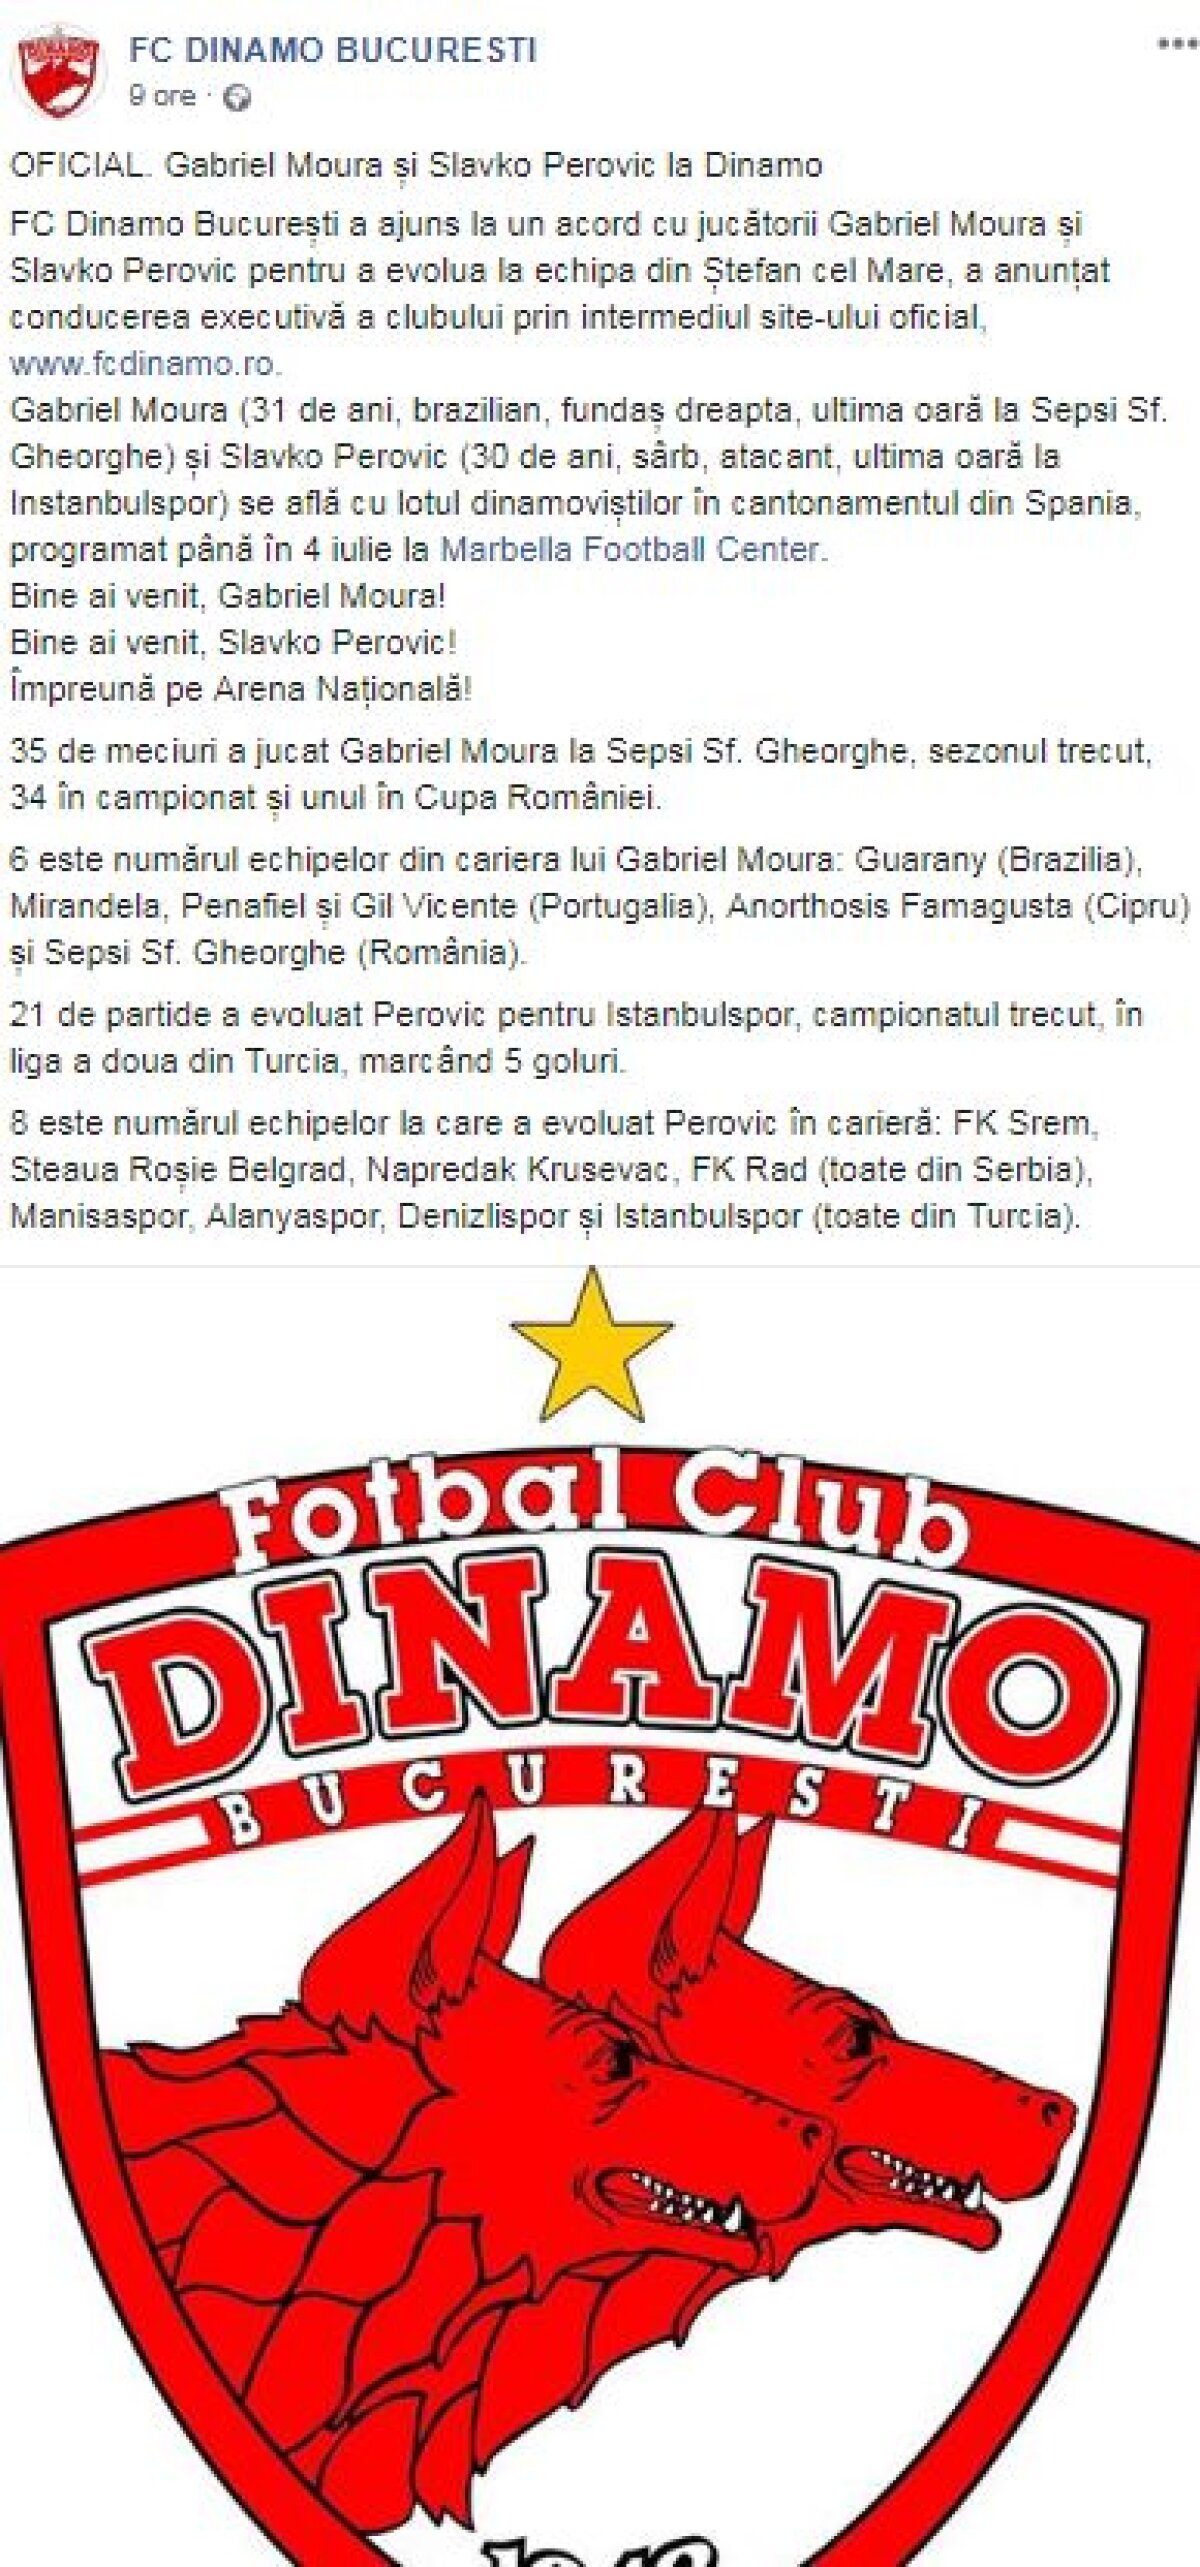 OFICIAL Dinamo, non-stop! Gabriel Moura și Slavko Perovic, două transferuri confirmate la miezul nopții